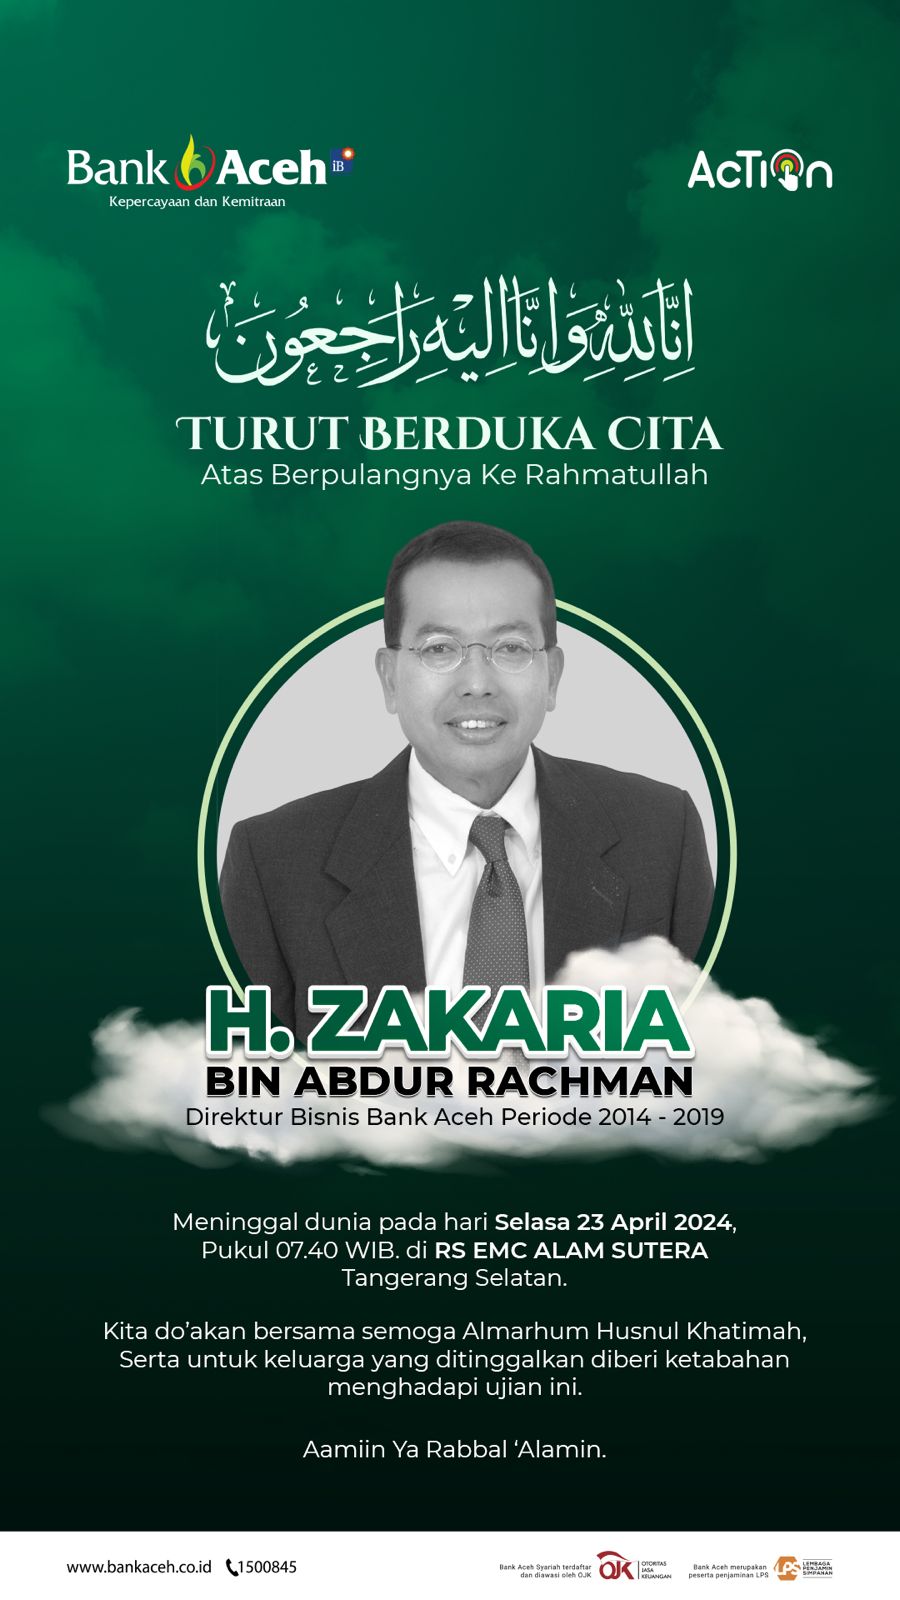 Ucapan Belasungkawa Zakaria A Rahman dari Bank Aceh